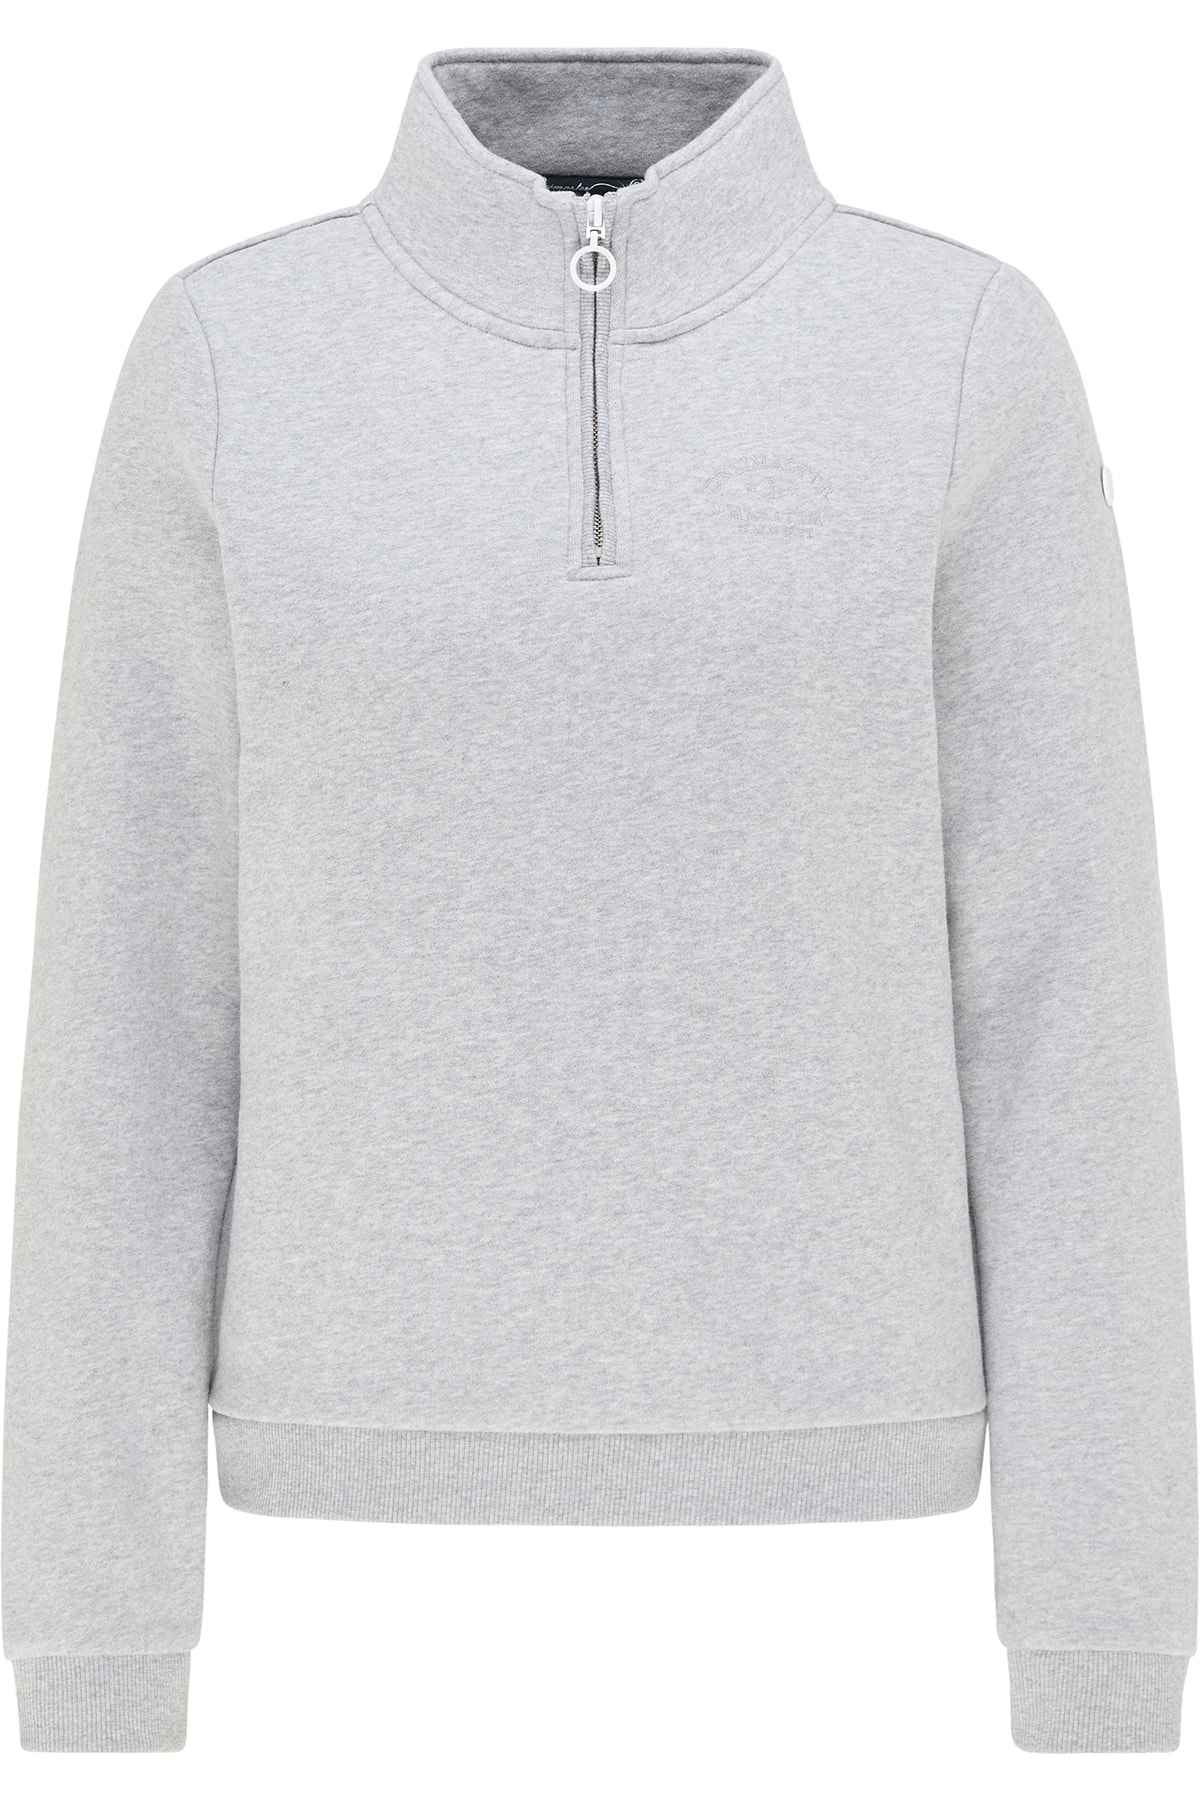 Dreimaster Sweatshirt Grau Regular Fit Fast ausverkauft